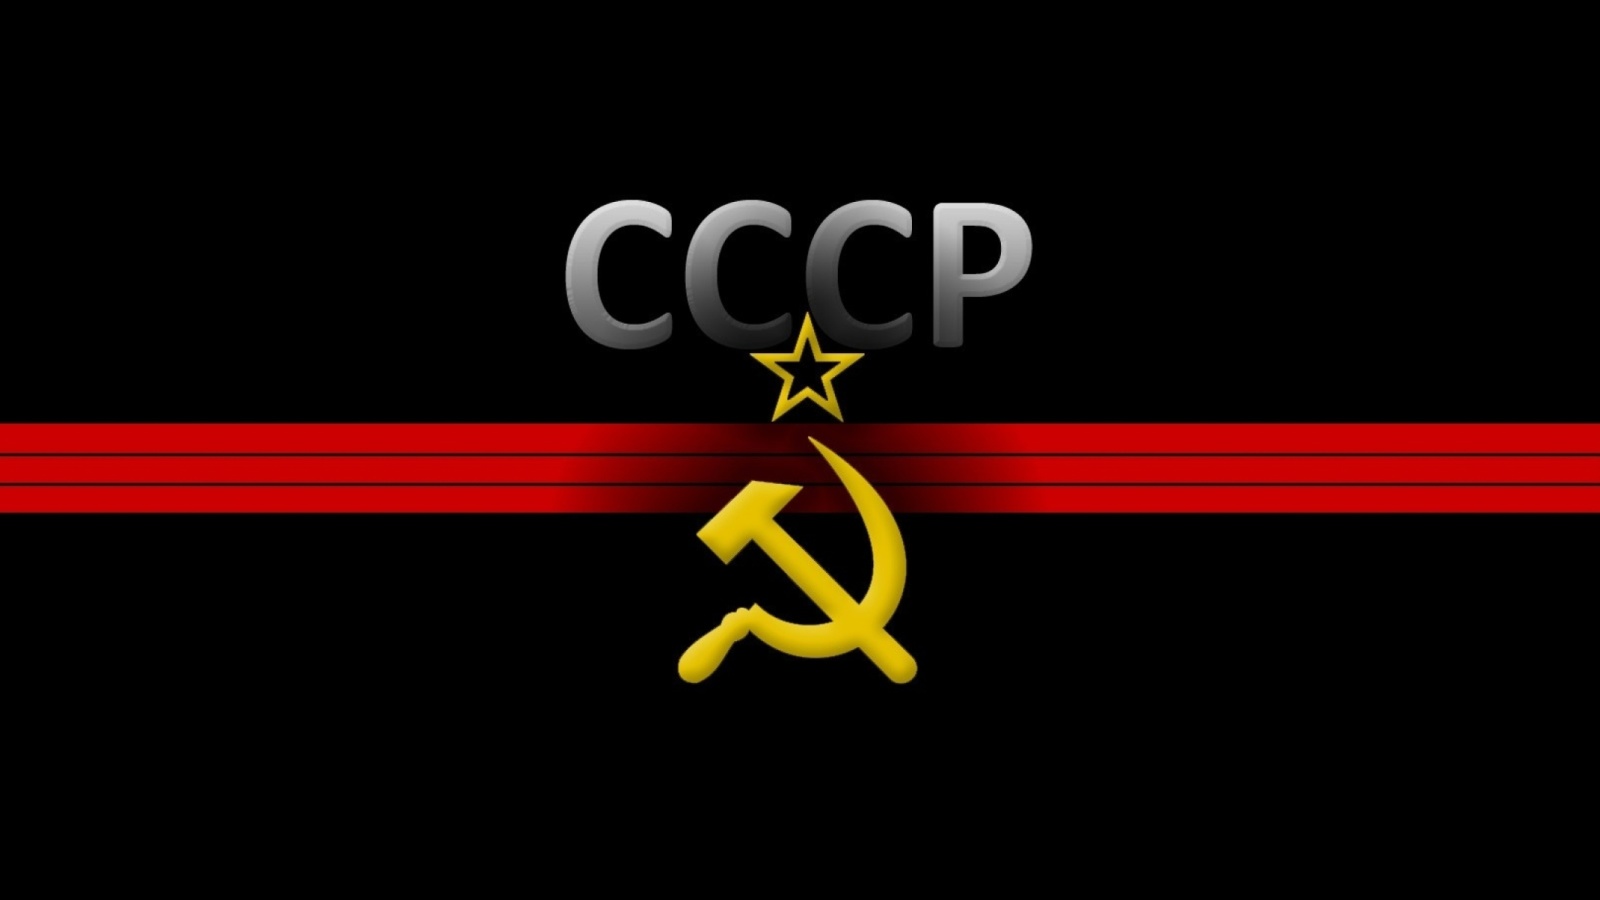 USSR and Communism Symbol screenshot #1 1600x900